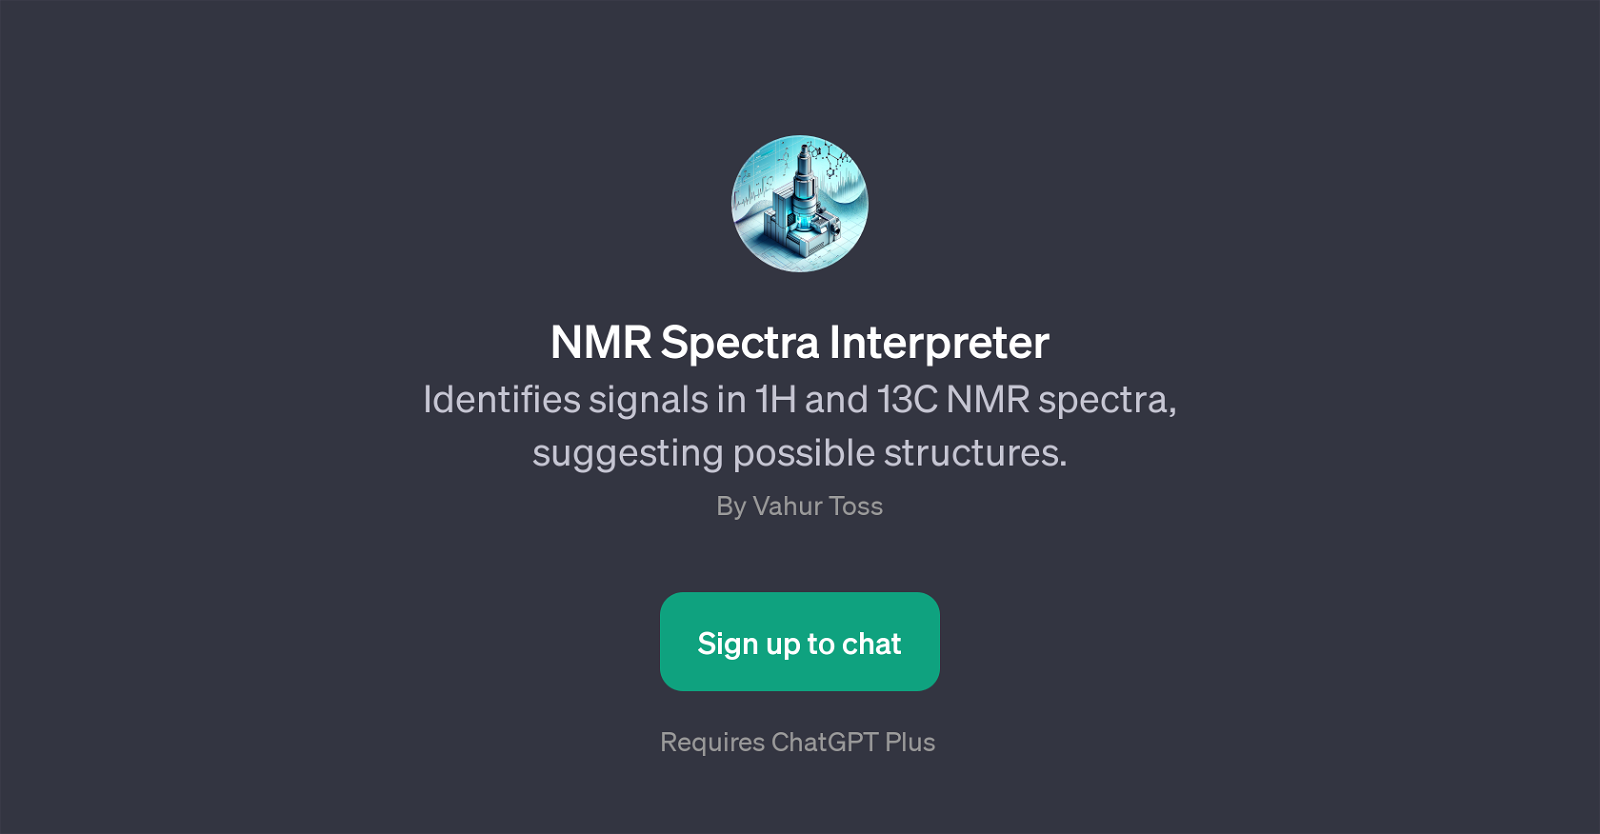 NMR Spectra Interpreter website